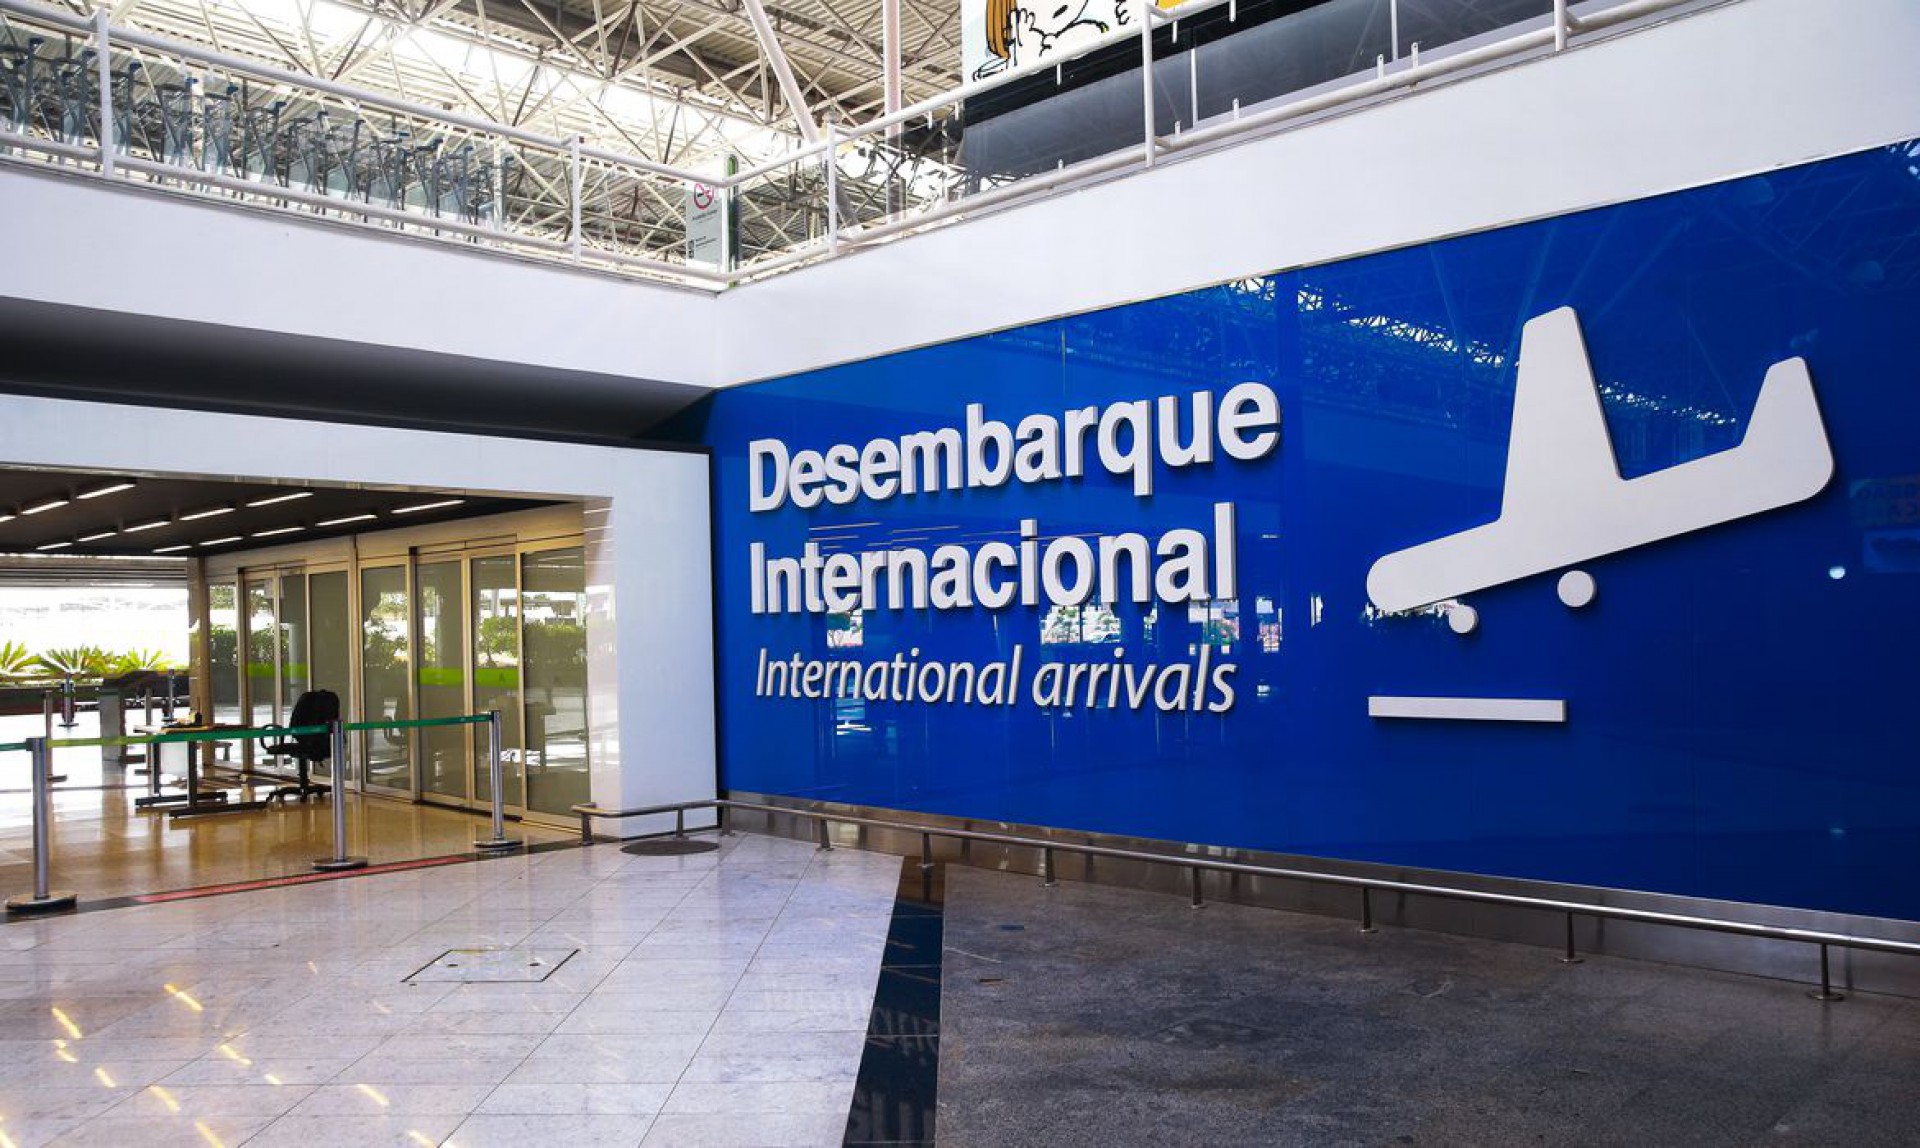 Aeroporto Internacional Juscelino Kubitschek, terceiro maior aeroporto do Brasil com pouca movimentação de passageiros (Foto: Marcello Casal Jr/Agência Brasil)